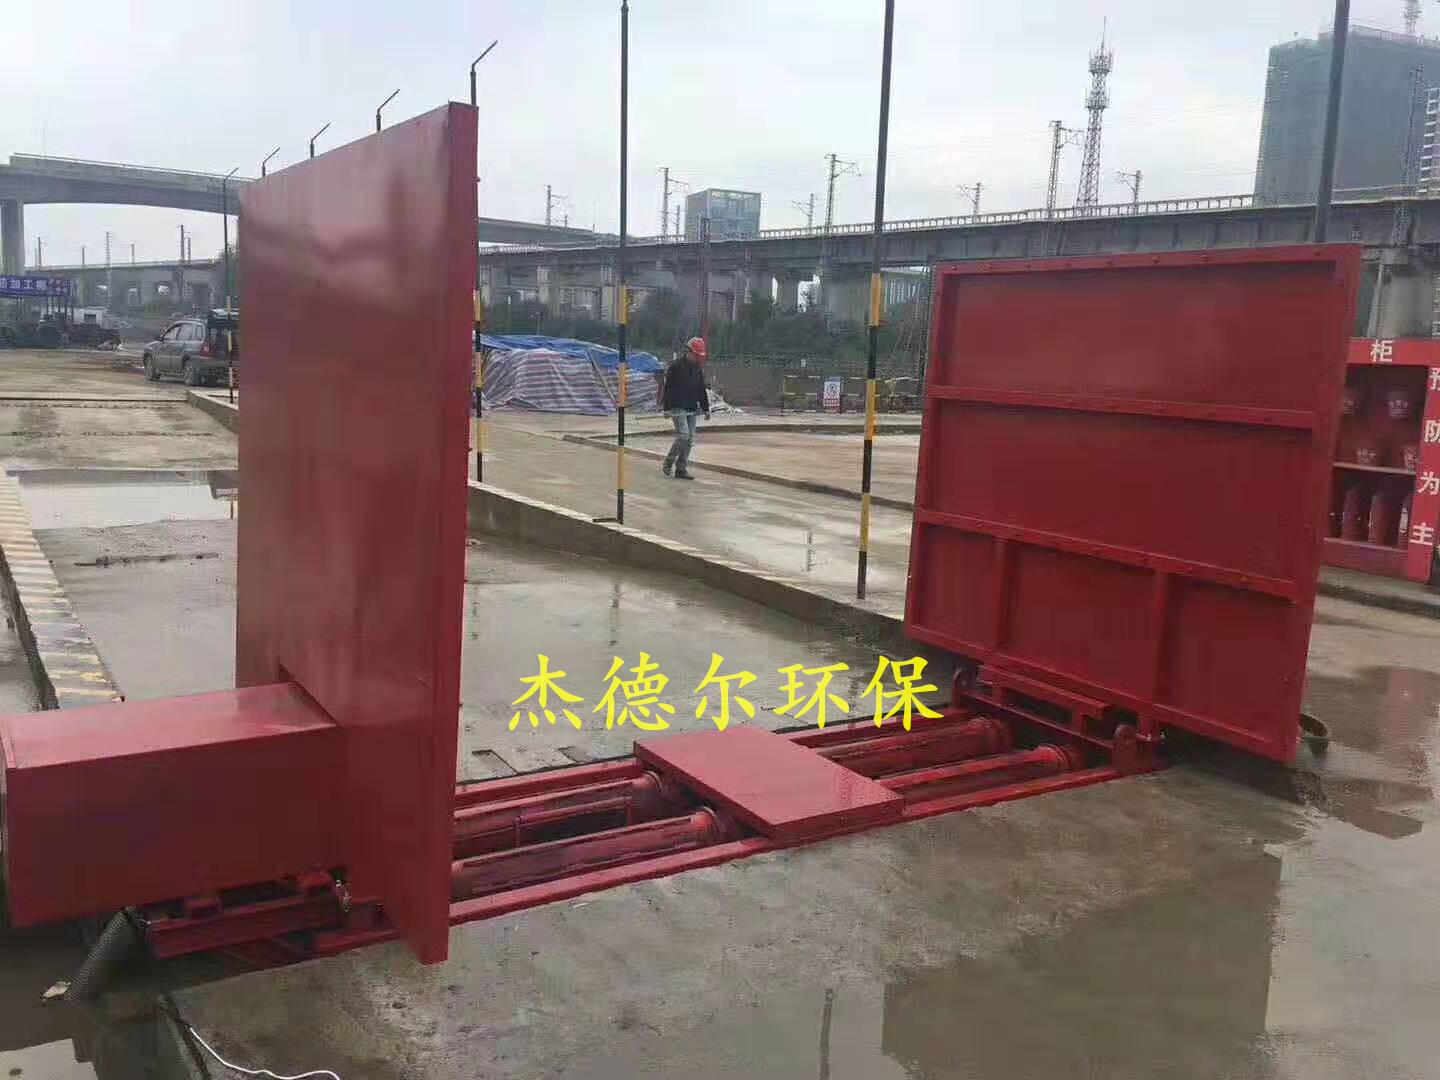 柳州融水苗族自治县-工地洗车槽-清洗效率高